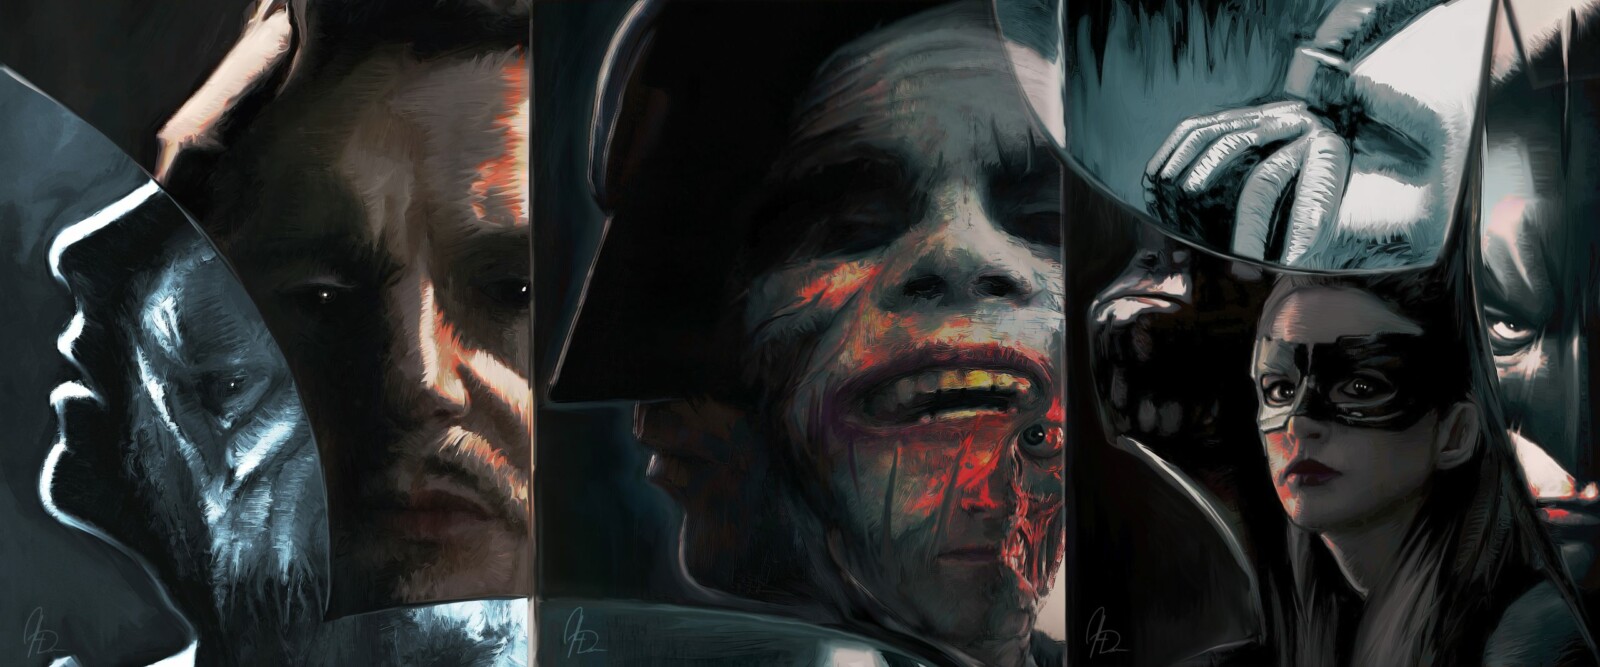 Dark Knight Trilogy: Complete Series Triptych